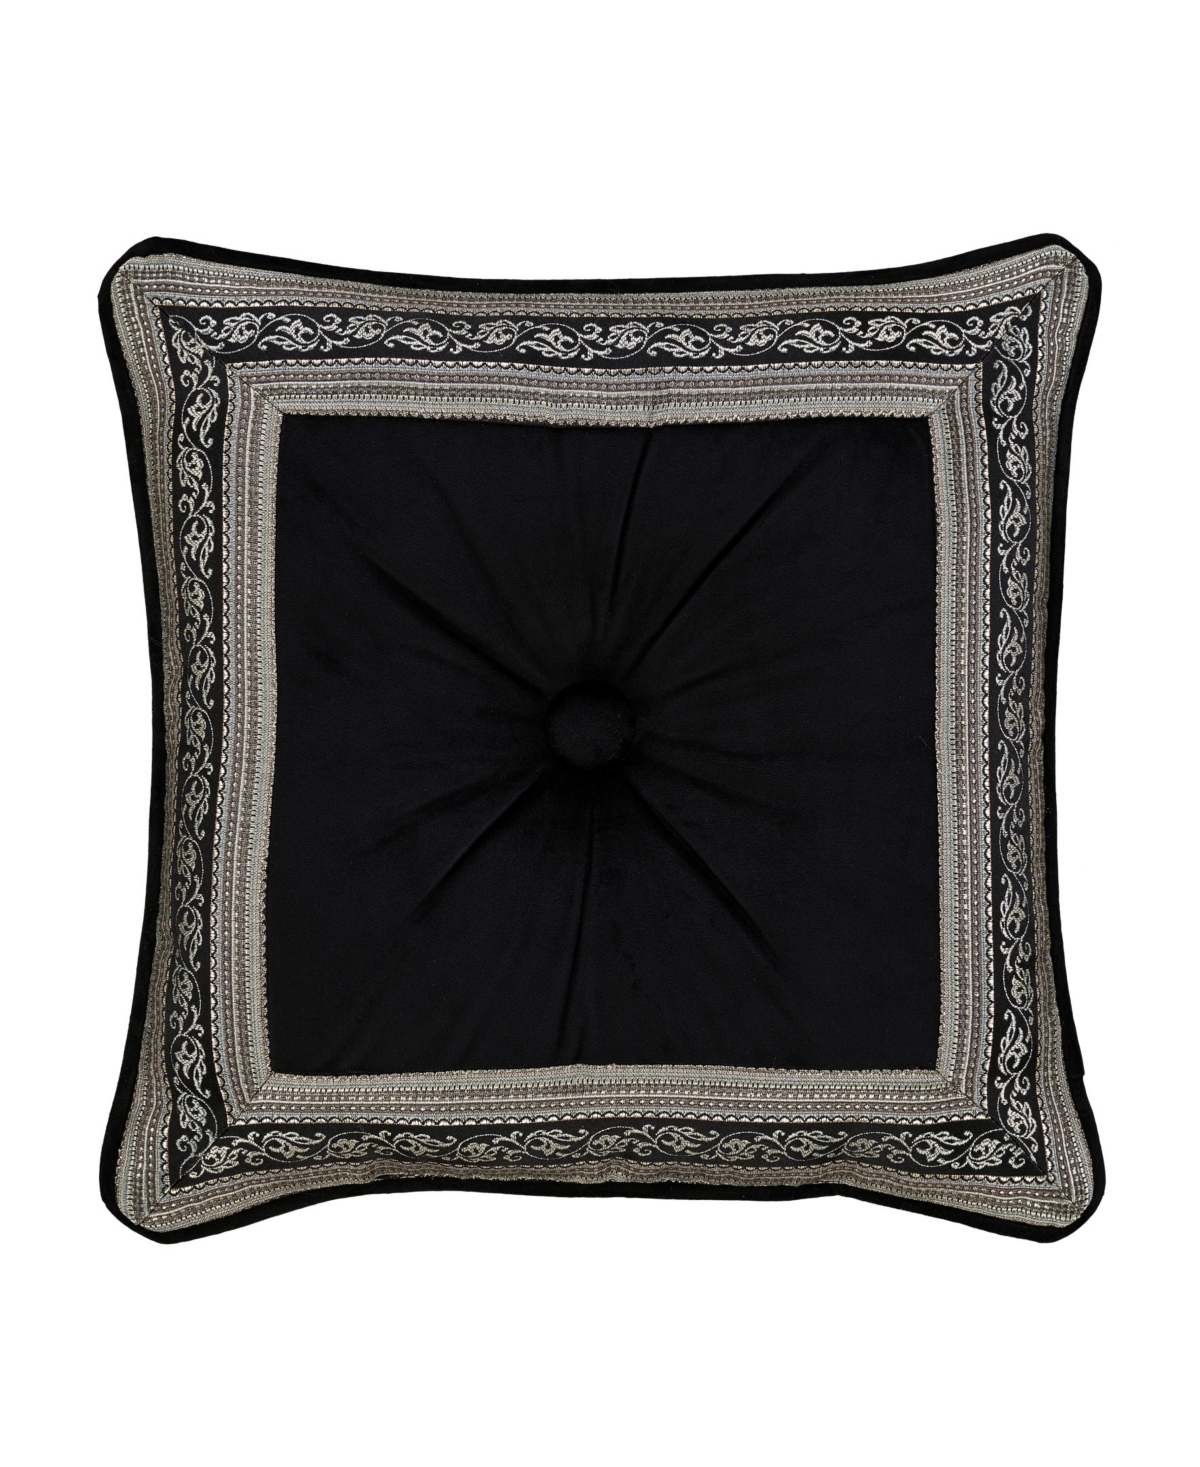 J Queen New York Vincenzo Square Decorative Pillow, 18" In Glacier